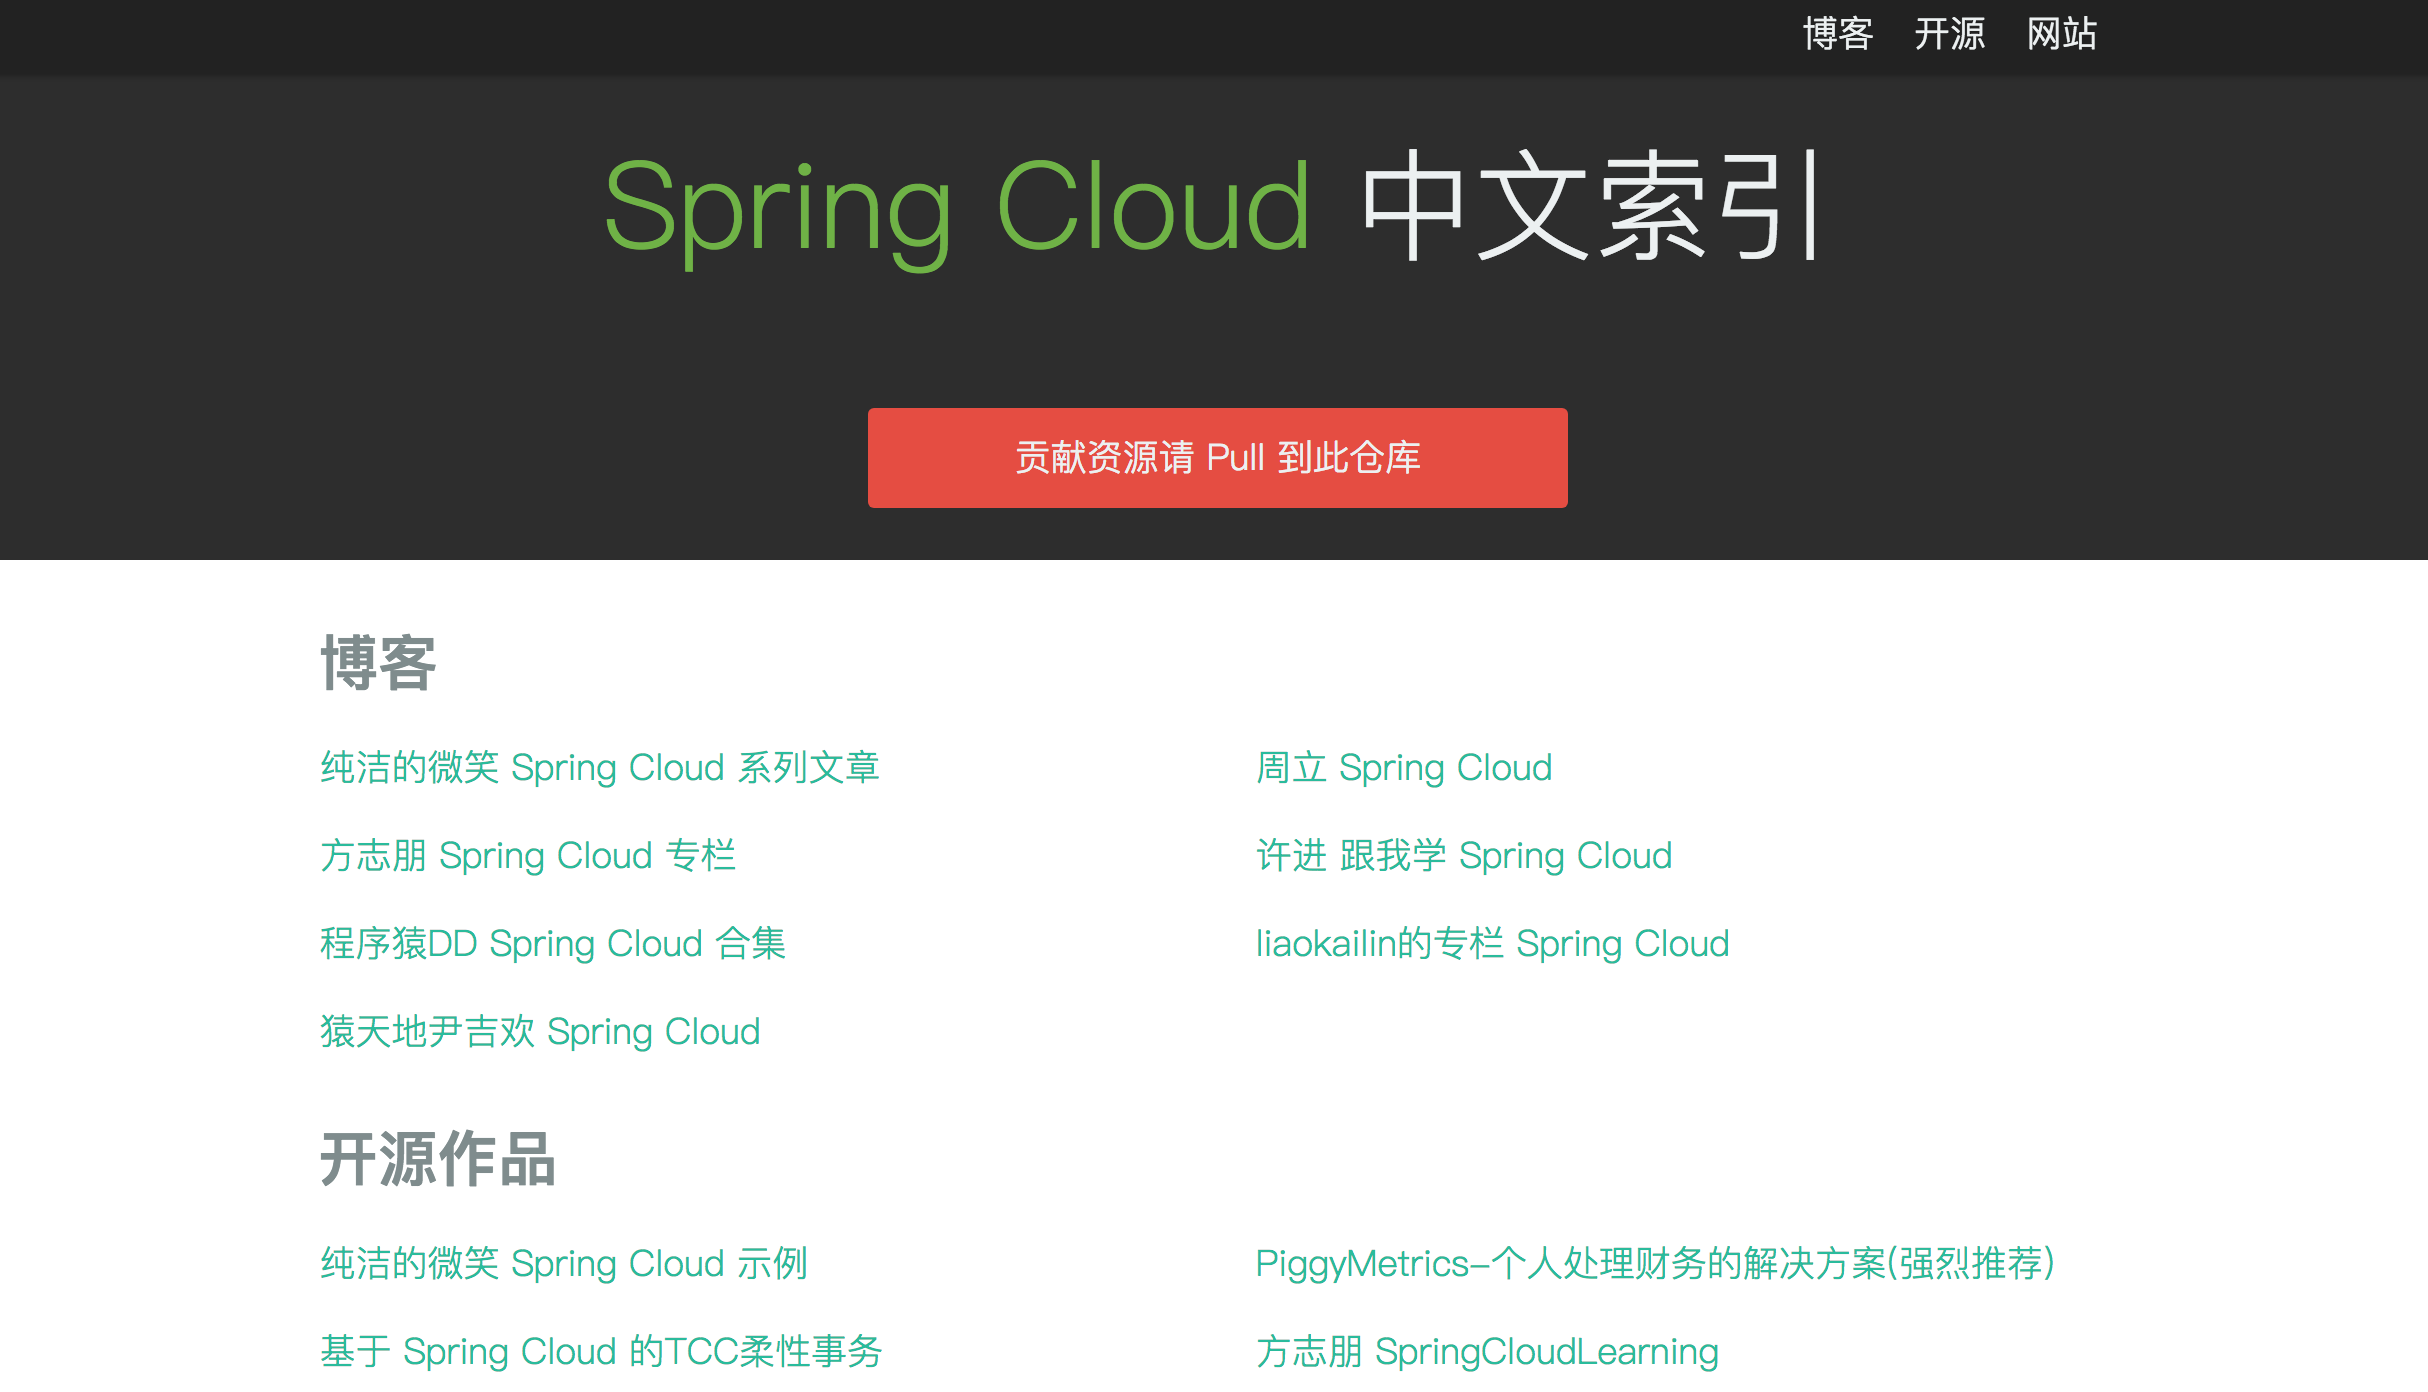 Spring Cloud 开源软件都有哪些？ 